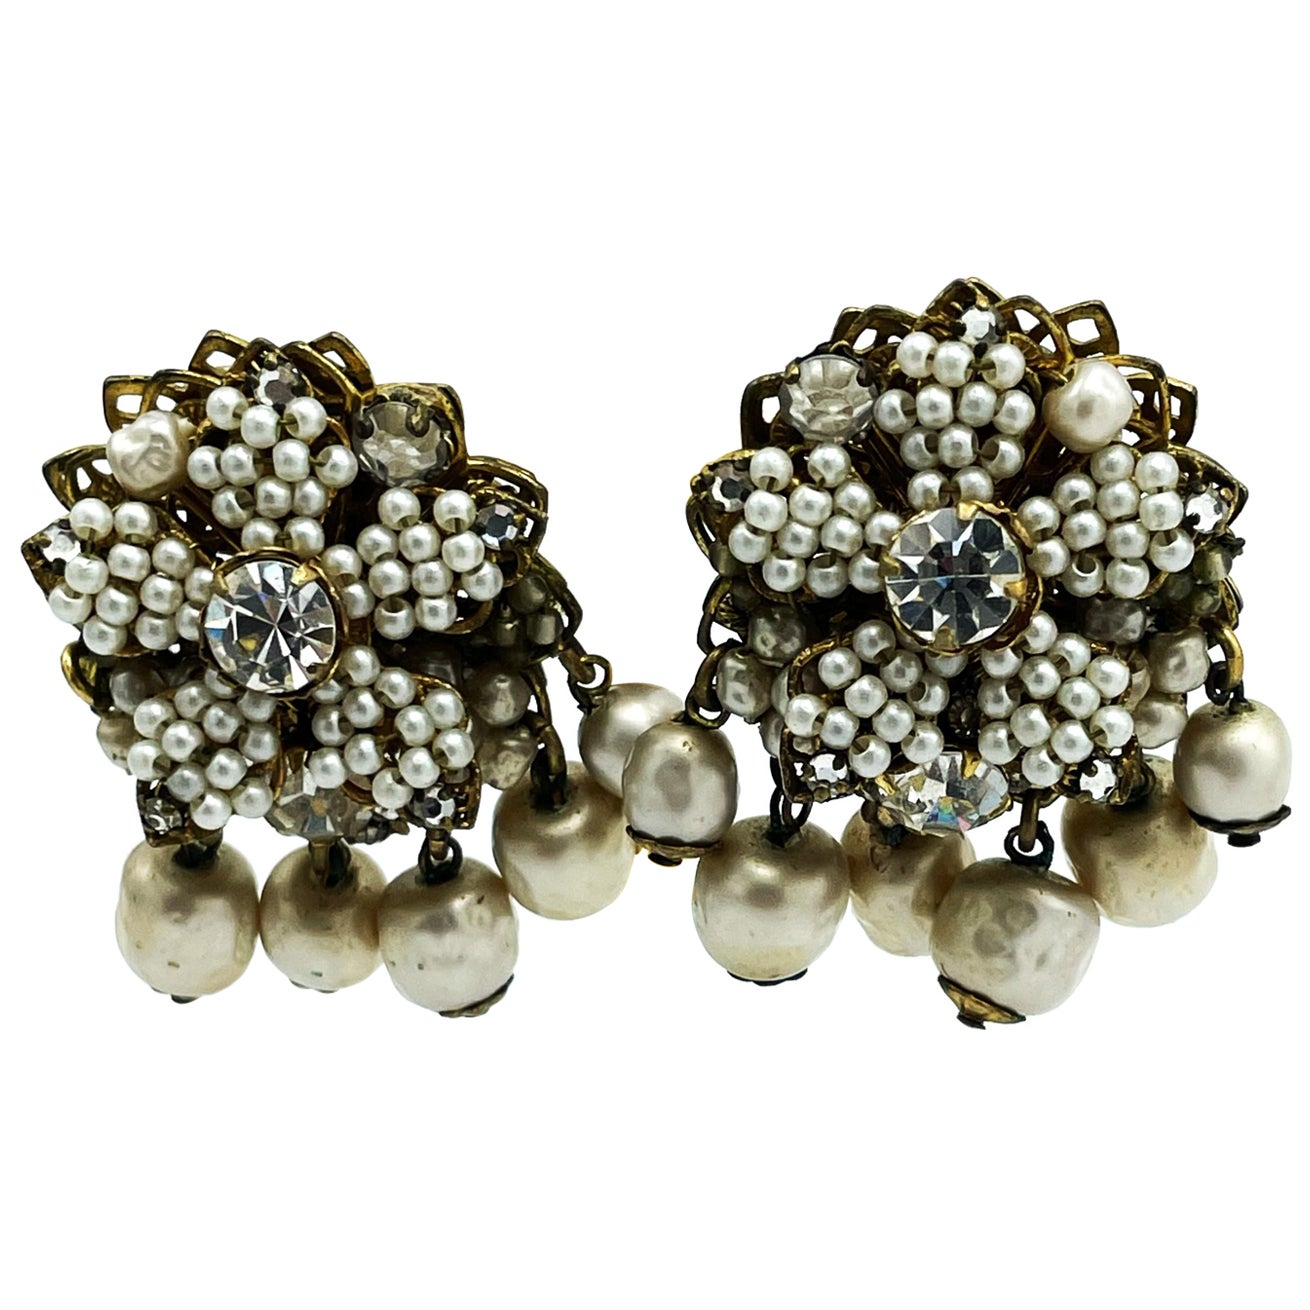 
Vintage-Ohrclips von DEMARIO NY aus den 1950er Jahren.
Die runde Form mit der 5-blättrigen Blüte ist mit winzigen handgefertigten Perlen besetzt. Größerer Strassstein in der Mitte und an den Spitzen der Blütenblätter. An der Unterseite sind 6